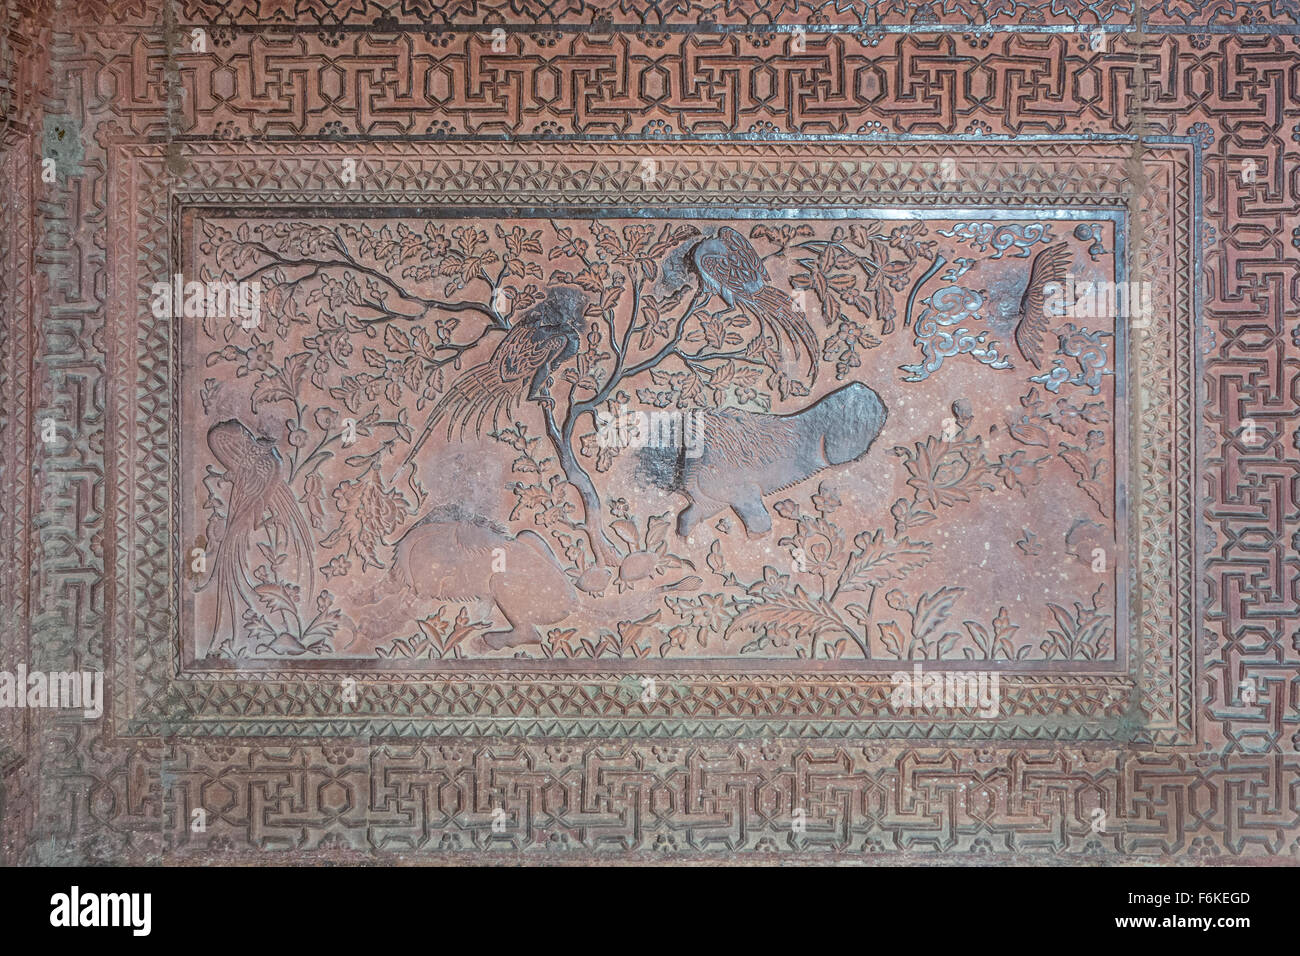 Fromme Bilderstürmer haben die Darstellungen von Tieren in dieser alten Wand Schnitzen in Fatehpur Sikri in Indien unkenntlich gemacht. Stockfoto